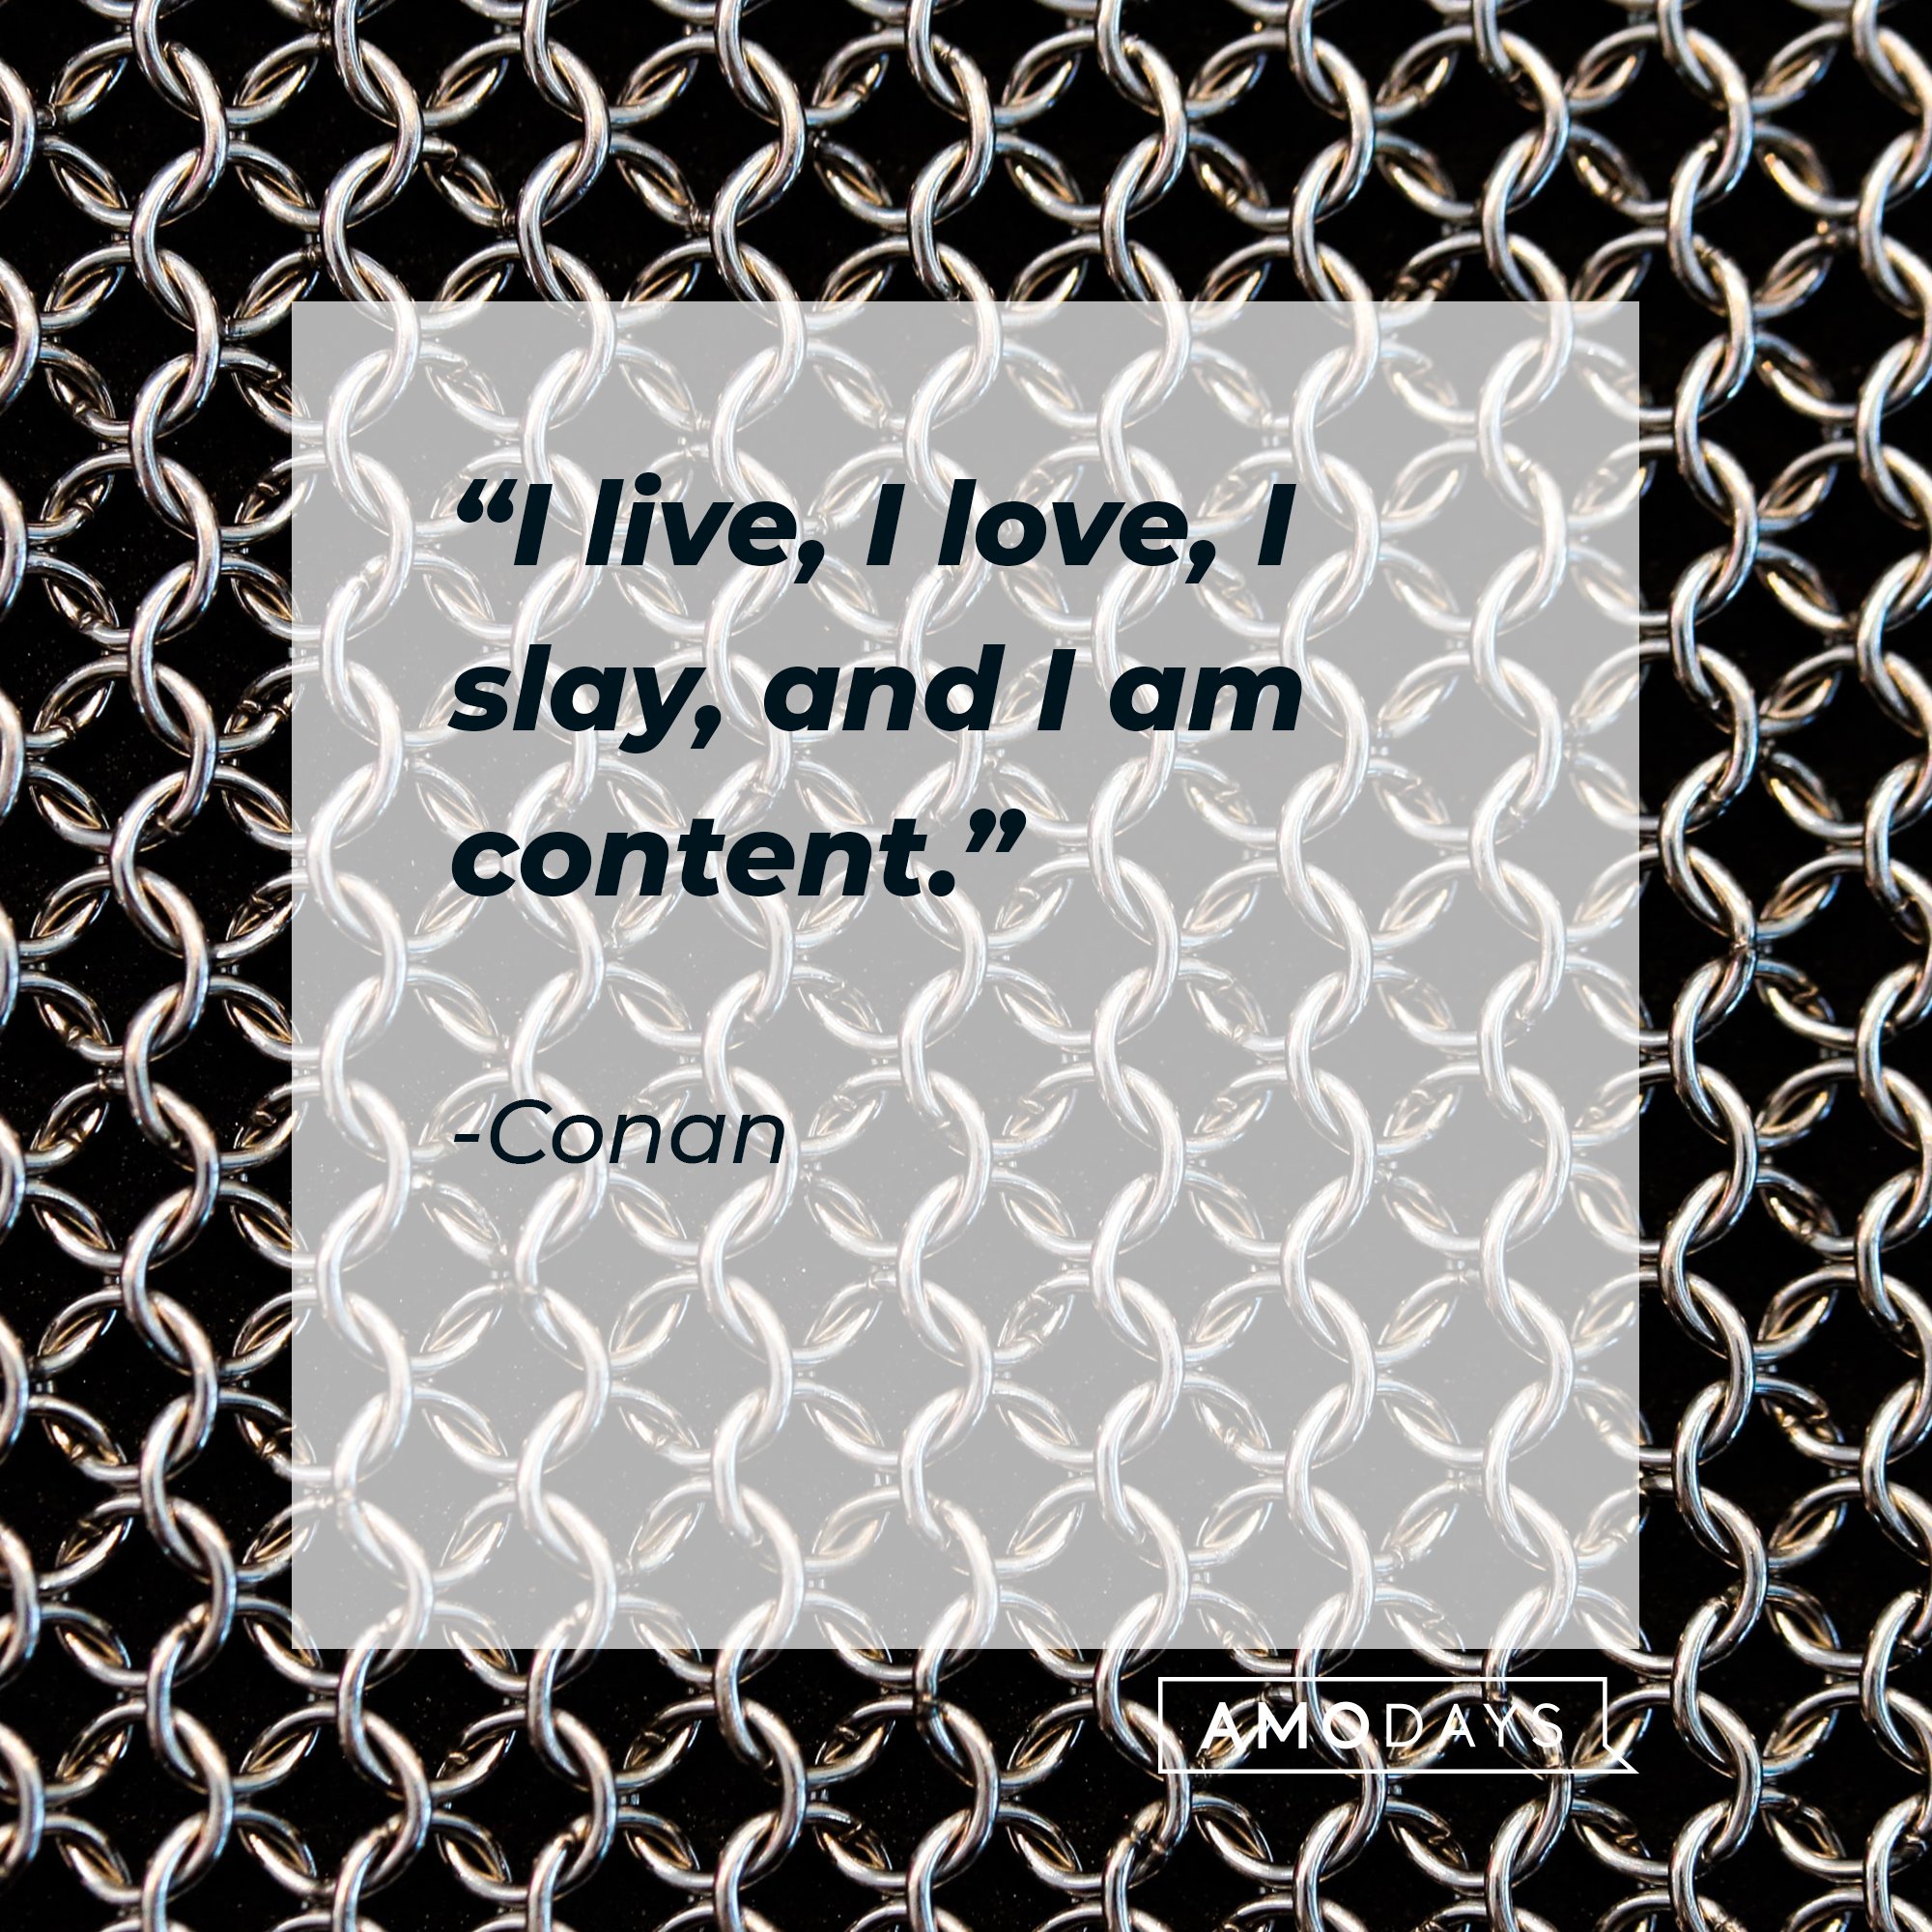 Conan's quote: “I live, I love, I slay, and I am content.” | Image: AmoDays